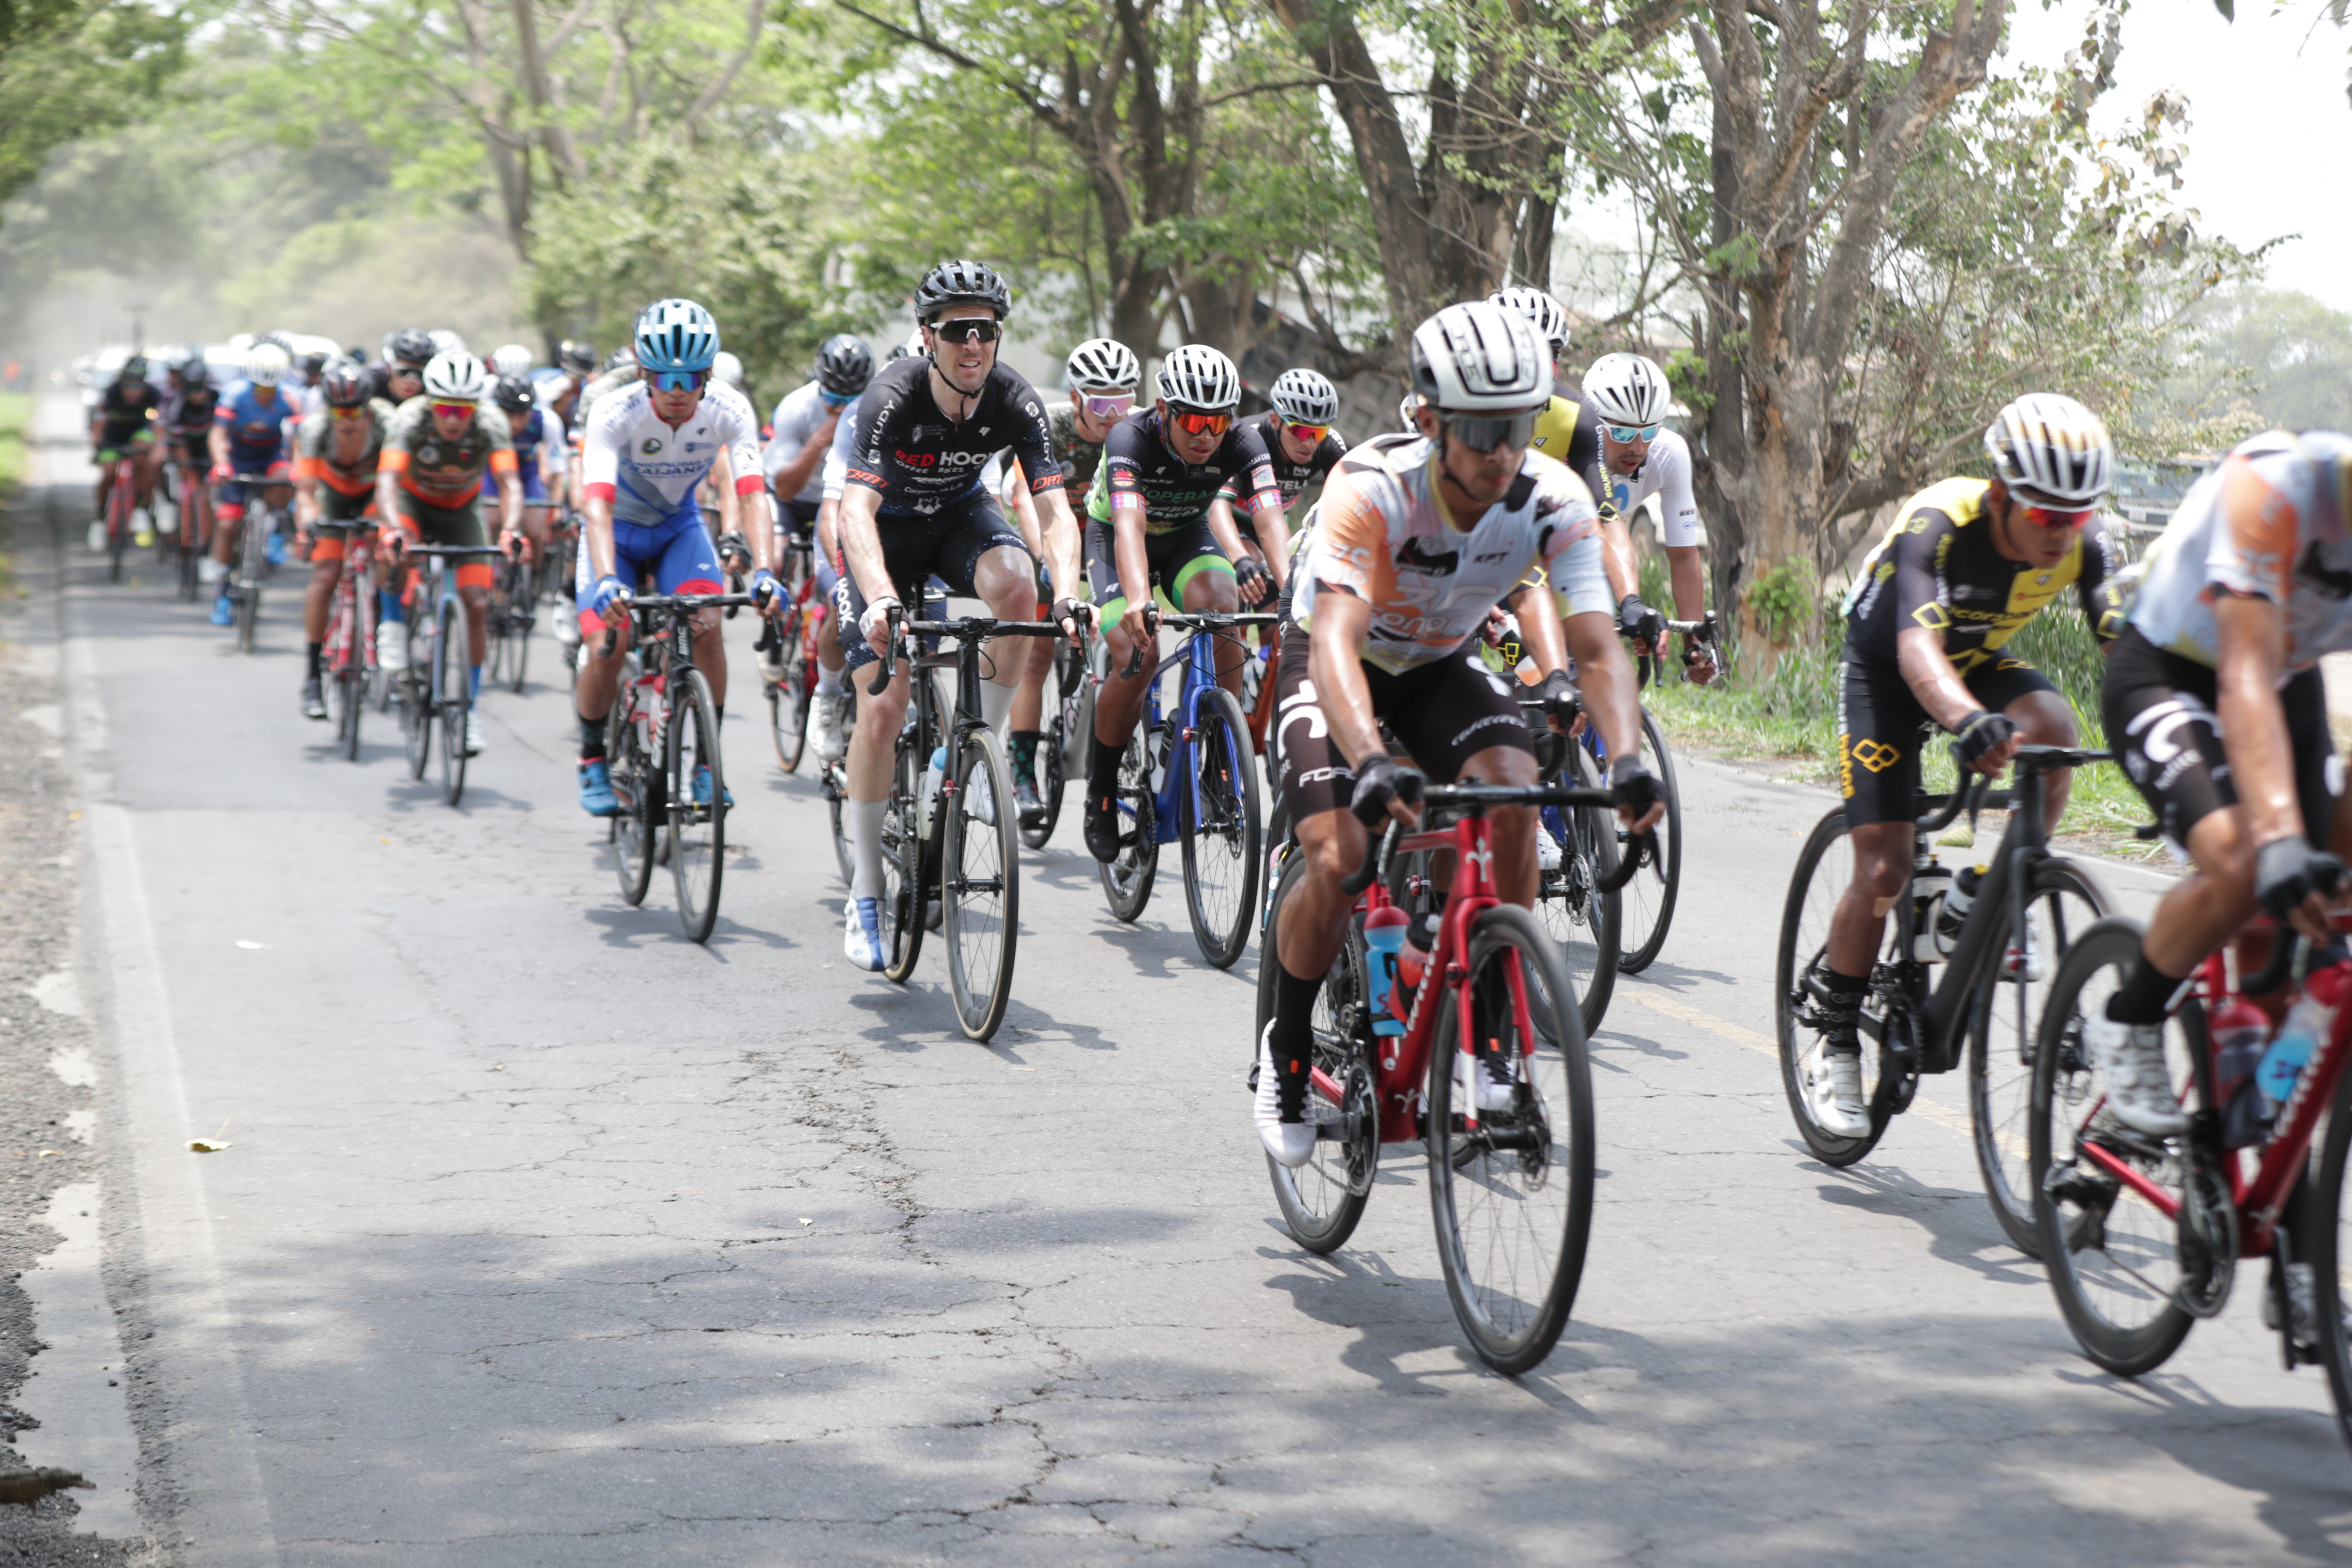 Se espera la participación de más de 100 corredores para la edición 62 de la Vuelta a Guatemala. (Foto Prensa Libre: Hemeroteca)